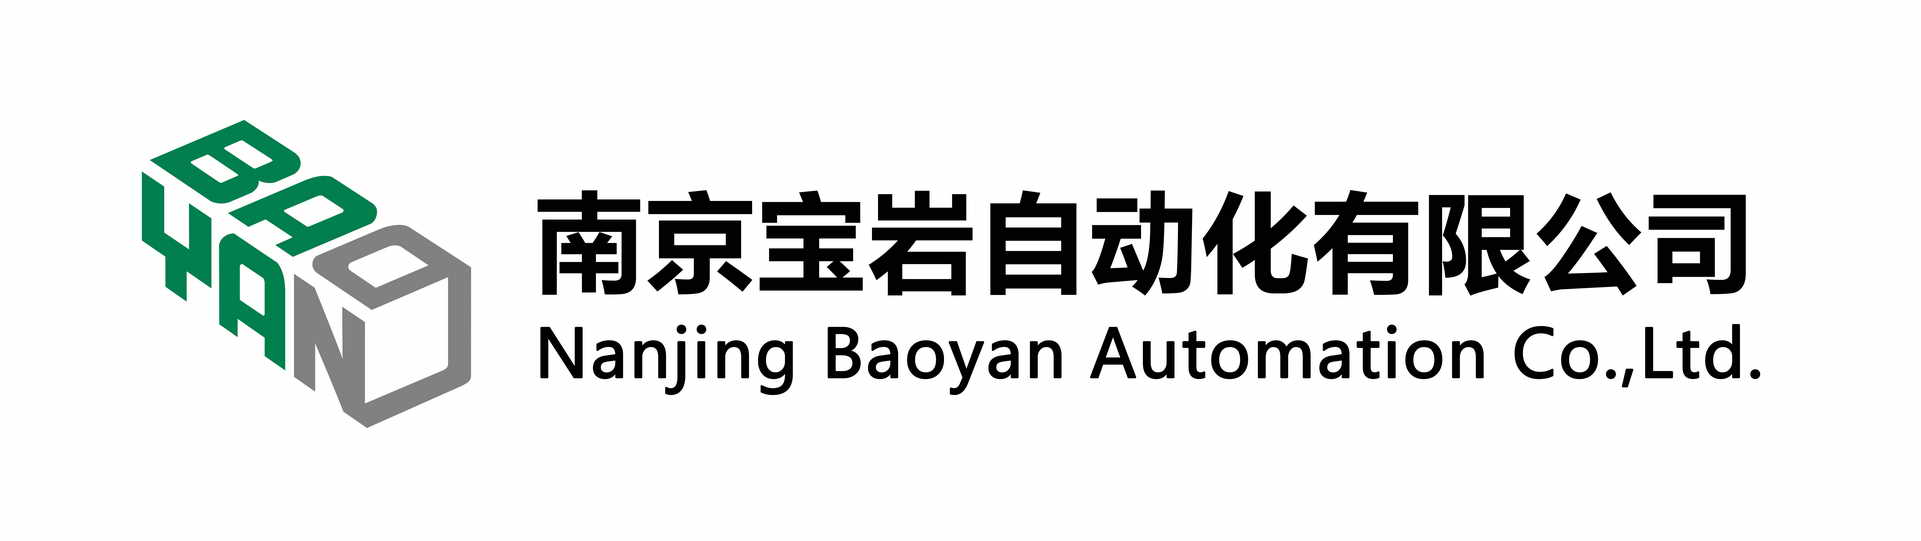 Автоматизация Baoyan Нанкин, Ltd